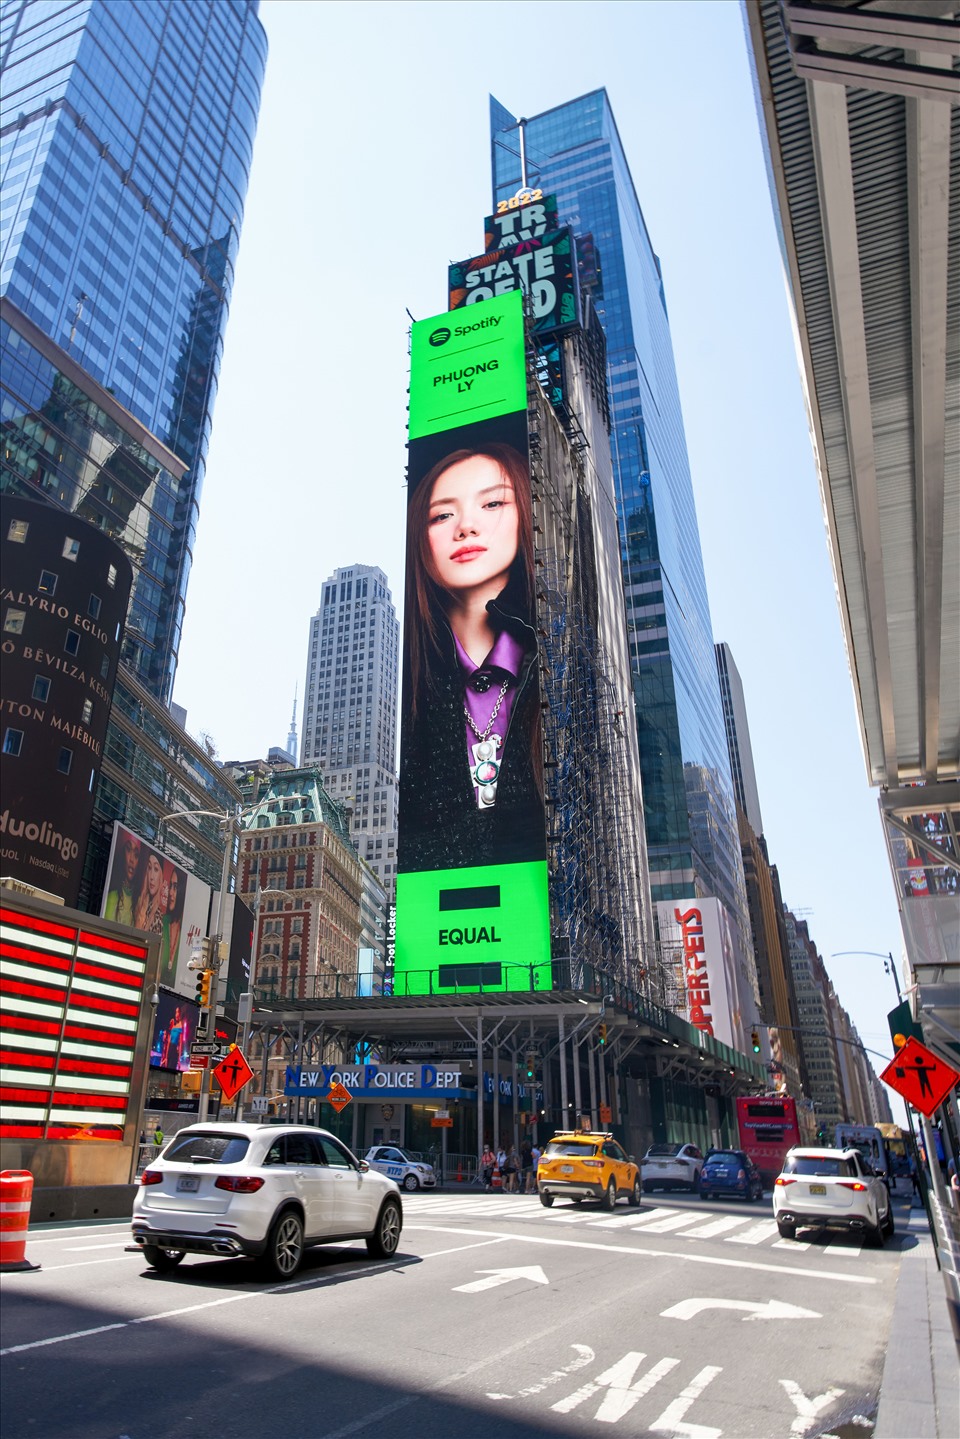 Sáng ngày 26/7, Phương Ly khiến người hâm mộ hào hứng khi chia sẻ hình ảnh cực thần thái của bản thân xuất hiện trên billboard tại quảng trường Thời Đại (New York, Mỹ). Ảnh: NSCC